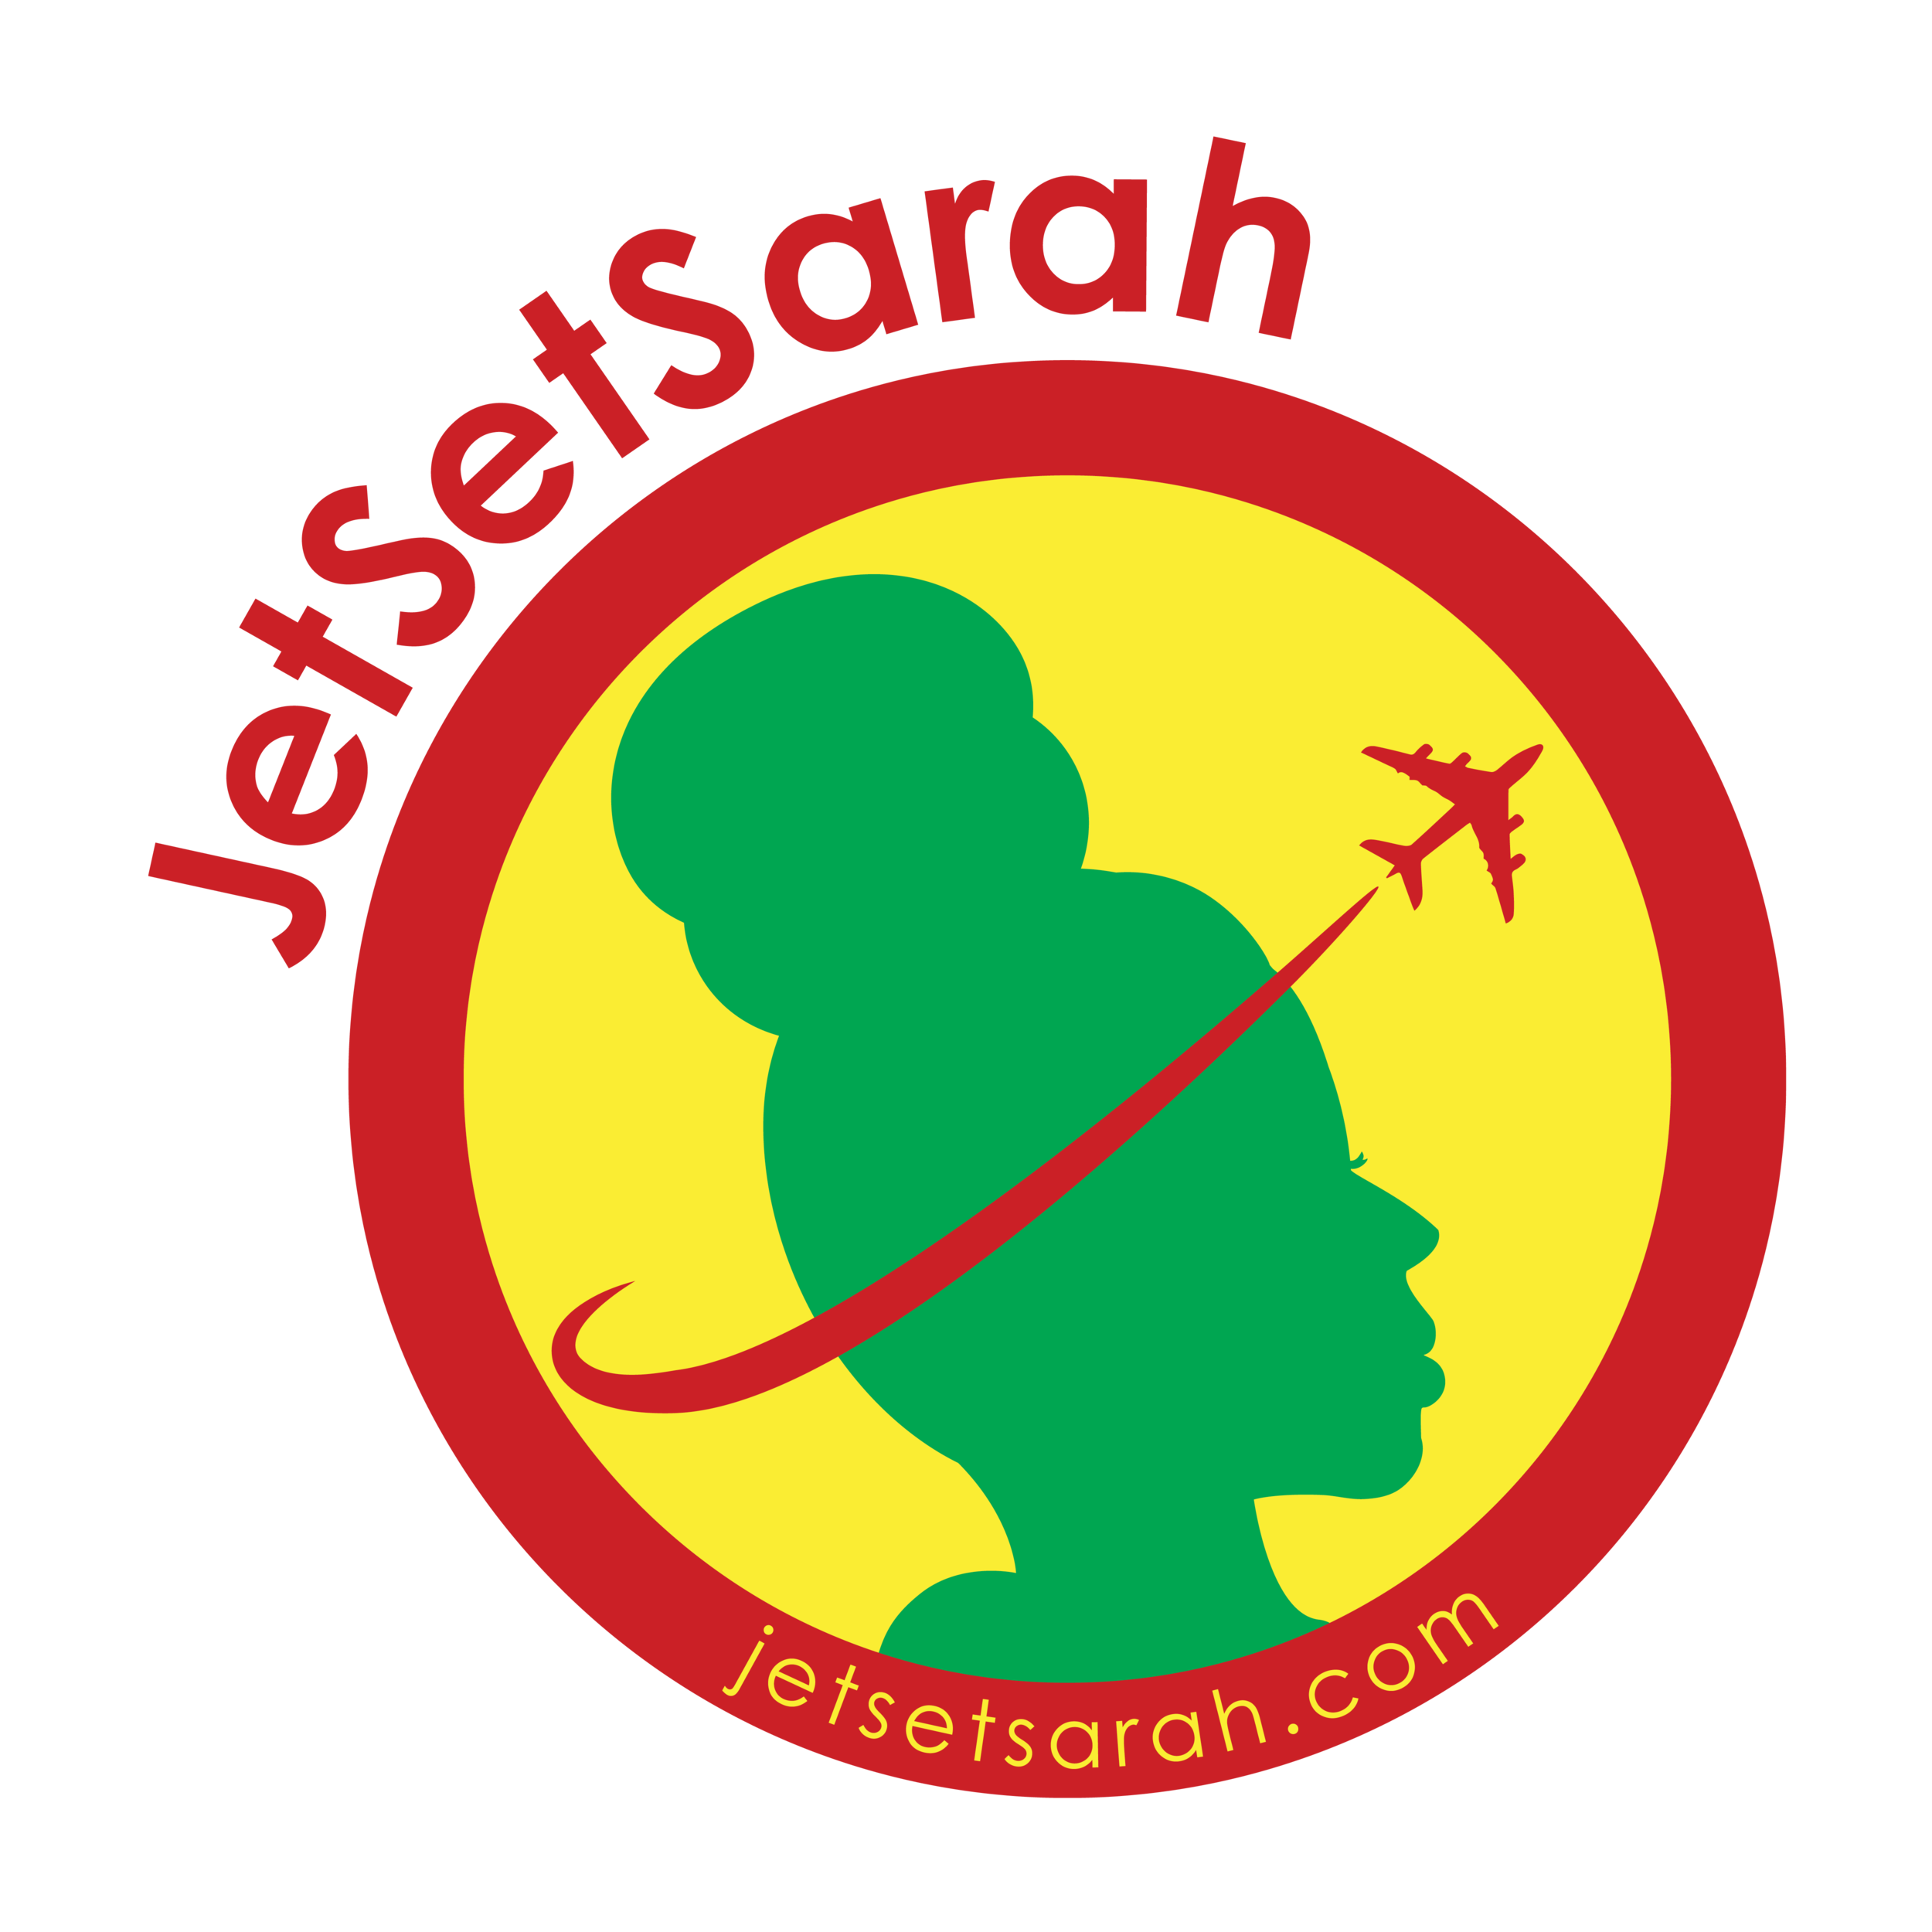 JetSetSarah